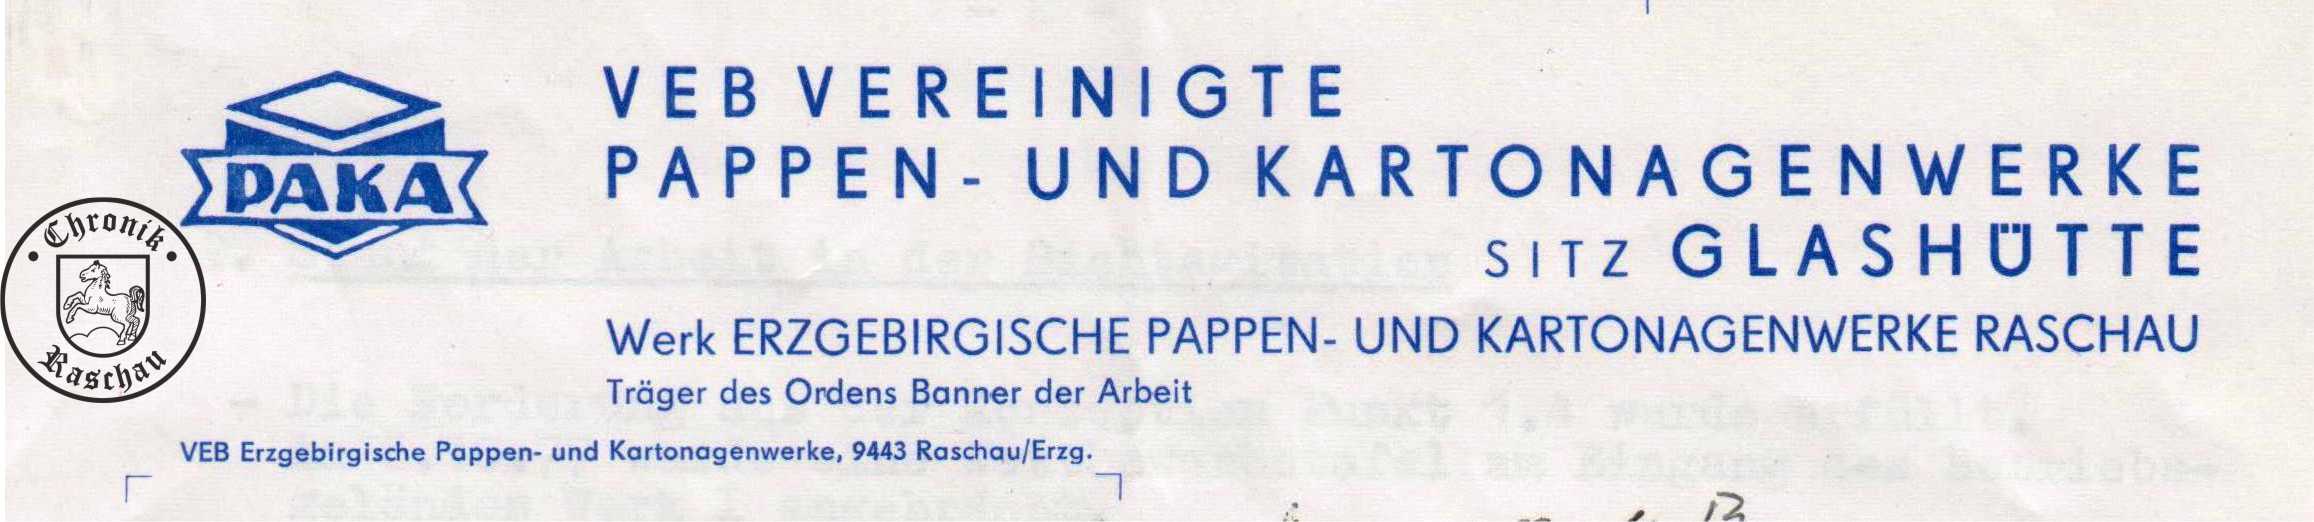 1977 Pappenwerk